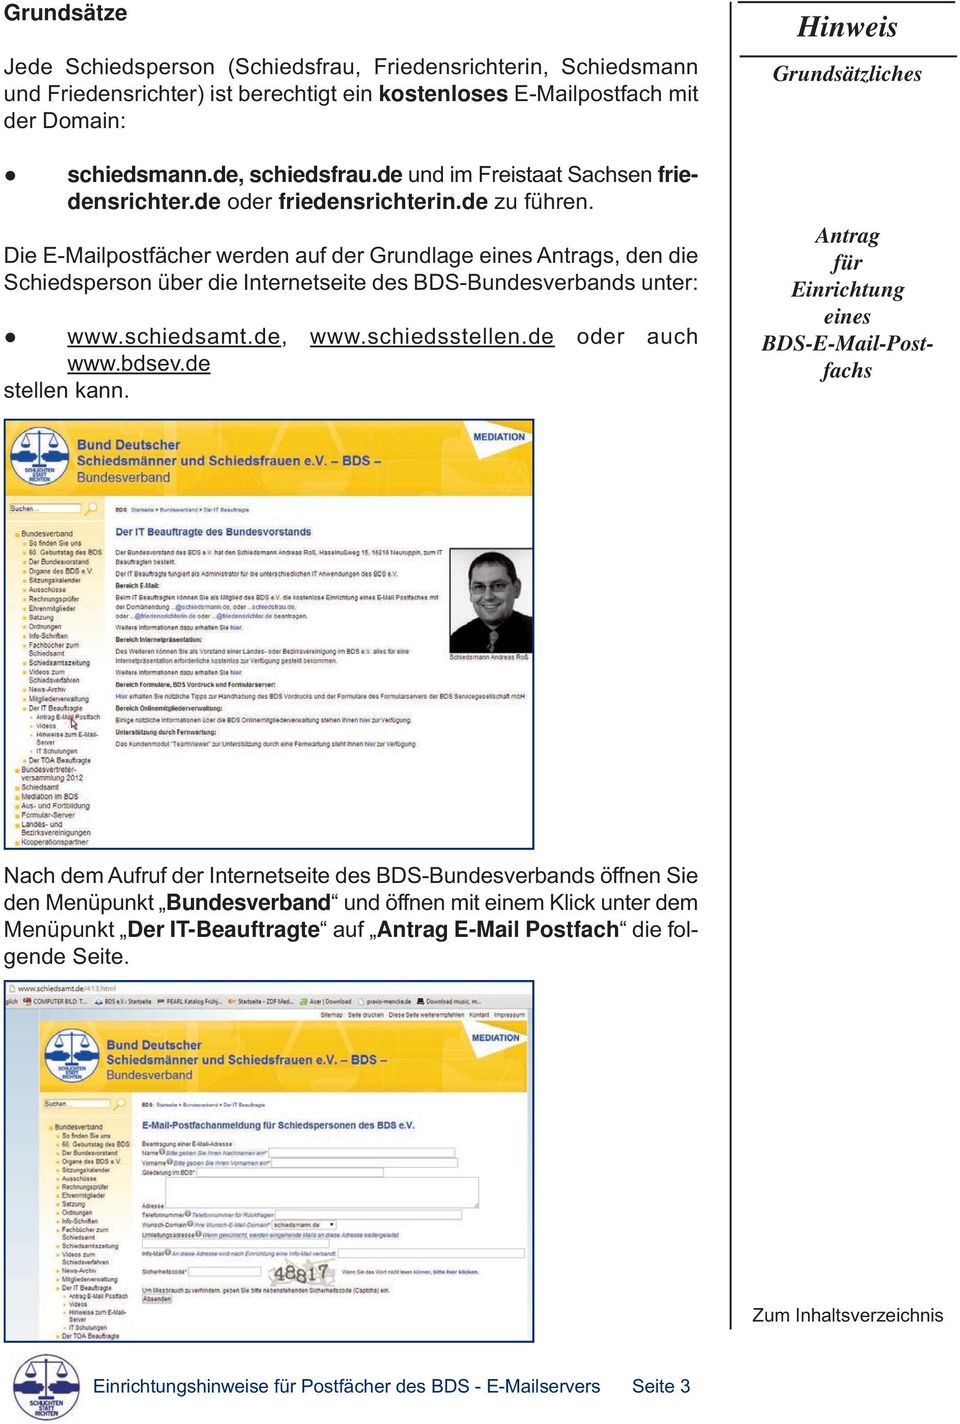 Die E-Mailpostfächer werden auf der Grundlage eines Antrags, den die Schiedsperson über die Internetseite des BDS-Bundesverbands unter: www.schiedsamt.de, www.schiedsstellen.de oder auch www.bdsev.